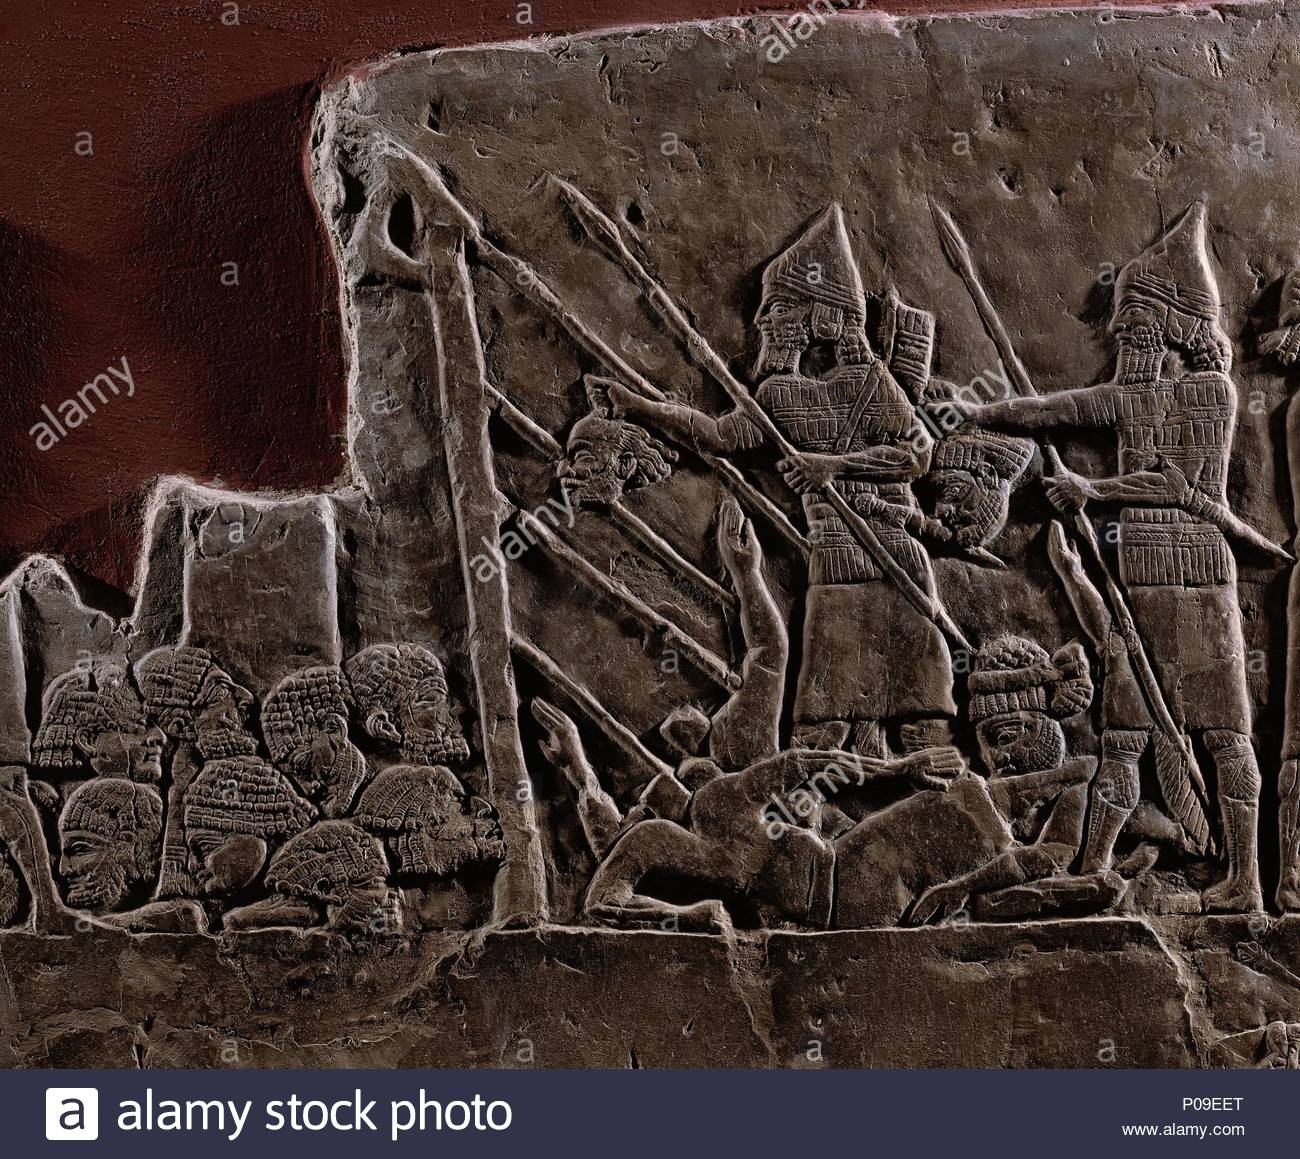 Bildresultat för Ashurbanipal and the king of Elam